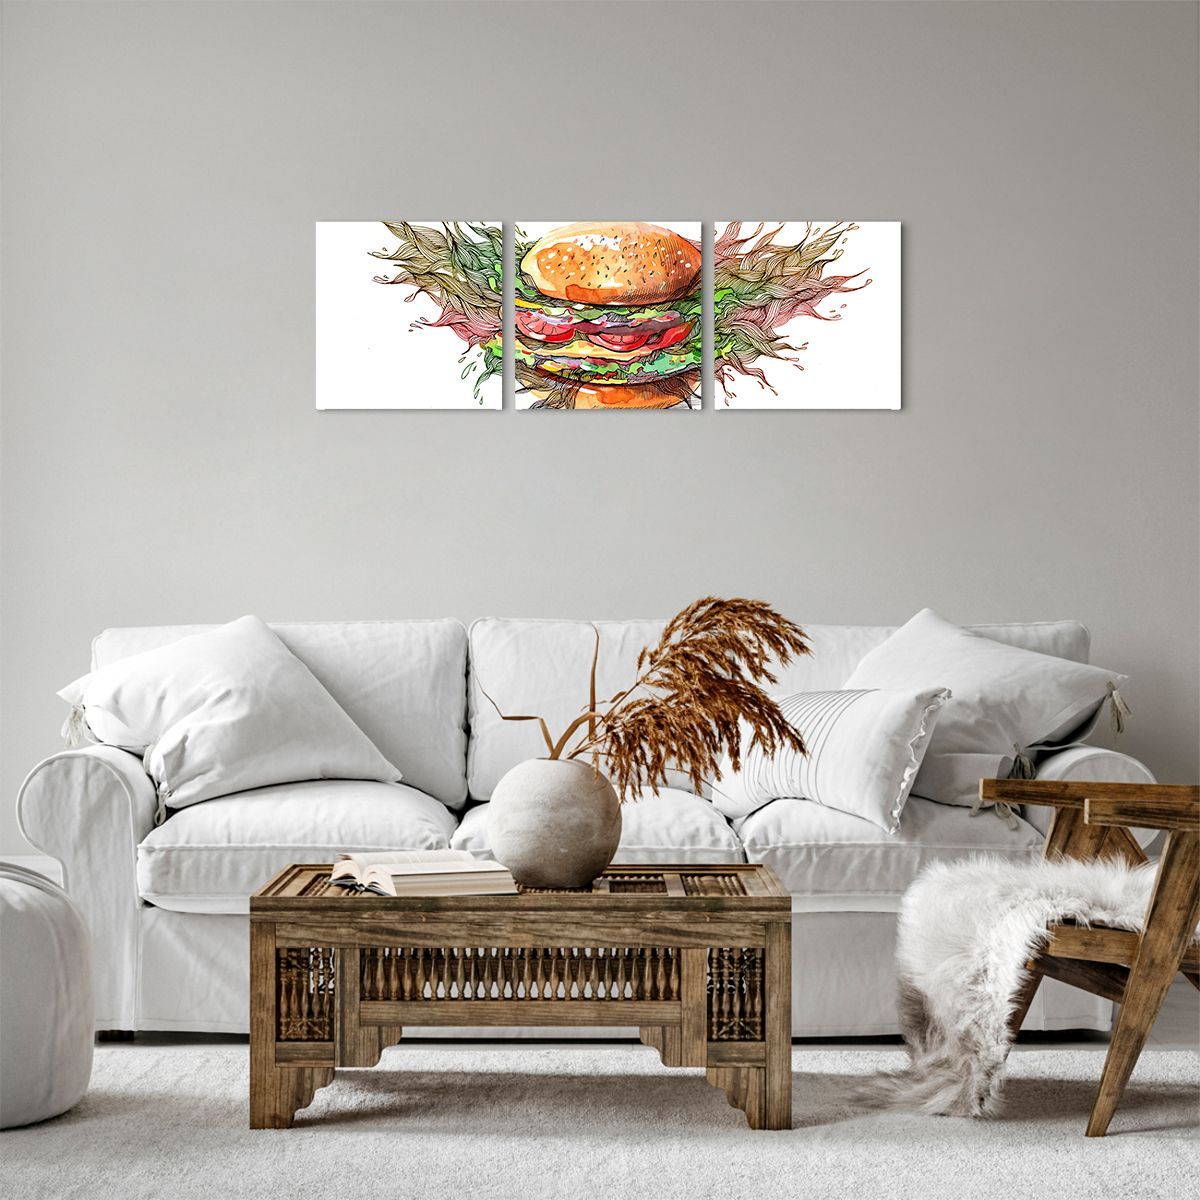 Obrazy na płótnie Gastronomia, Obrazy na płótnie Hamburger, Obrazy na płótnie Kulinaria, Obrazy na płótnie Kuchnia, Obrazy na płótnie Fast Food